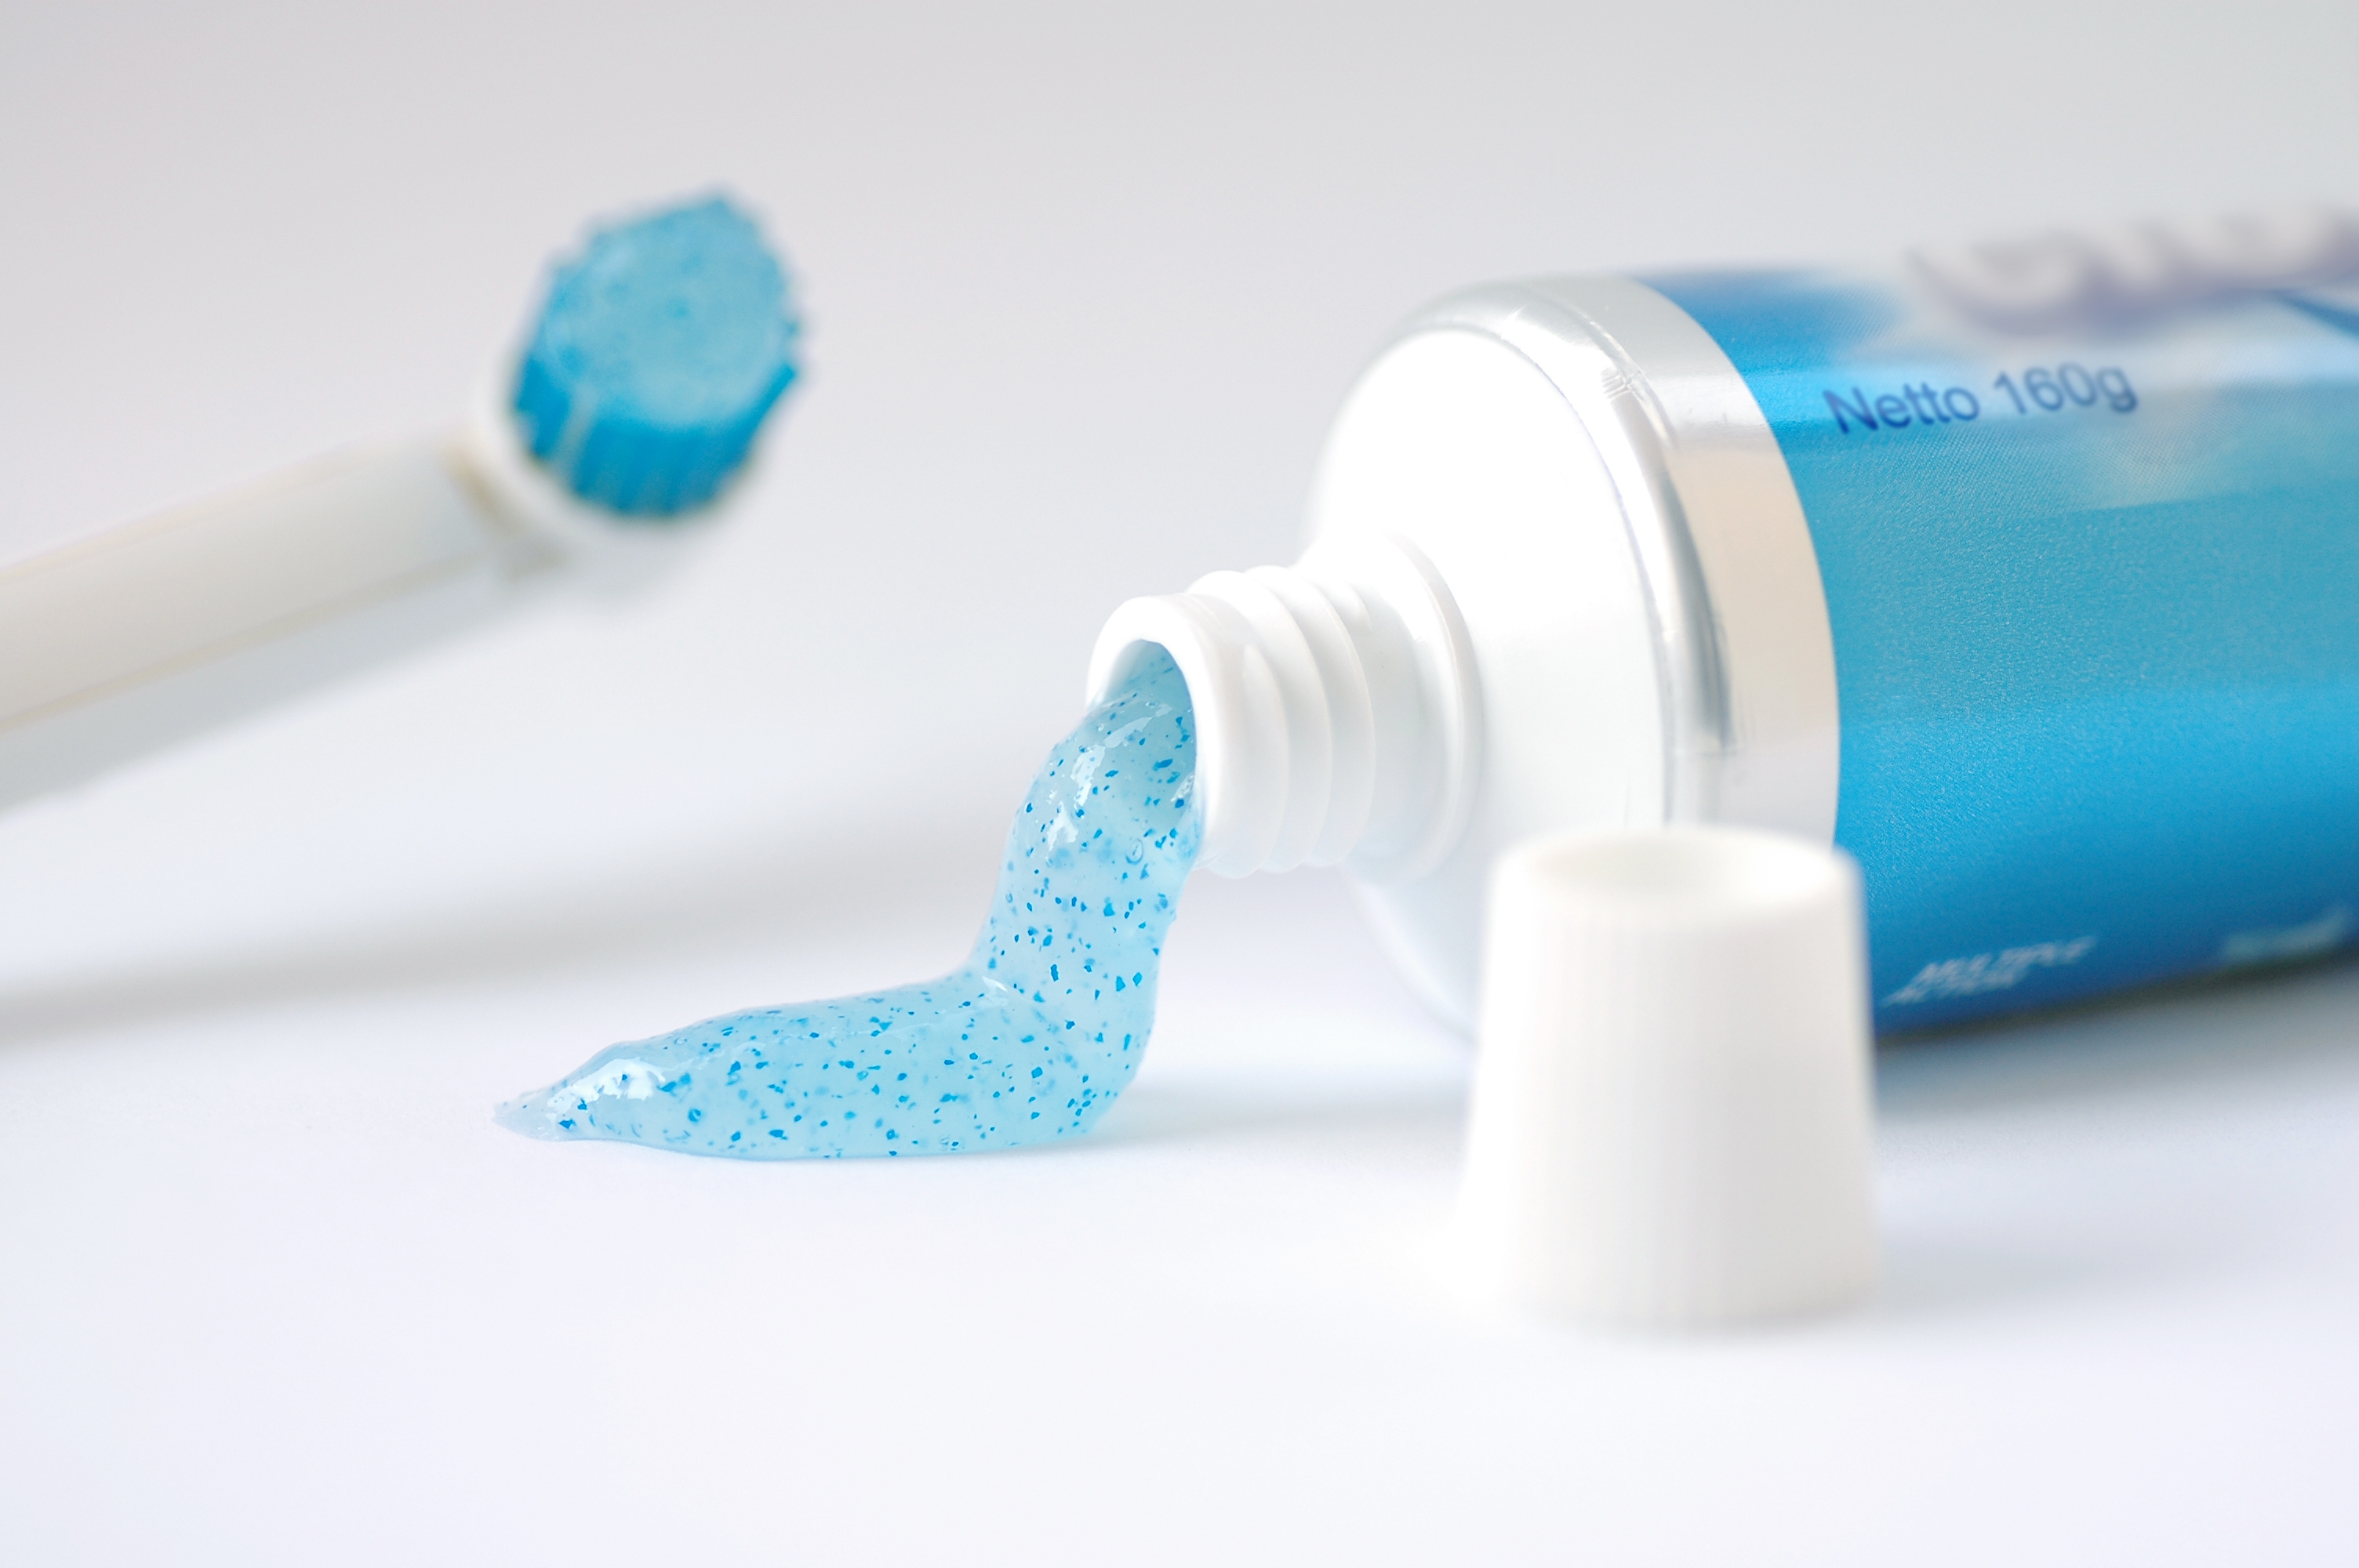 10 Toothbrushing Mistakes